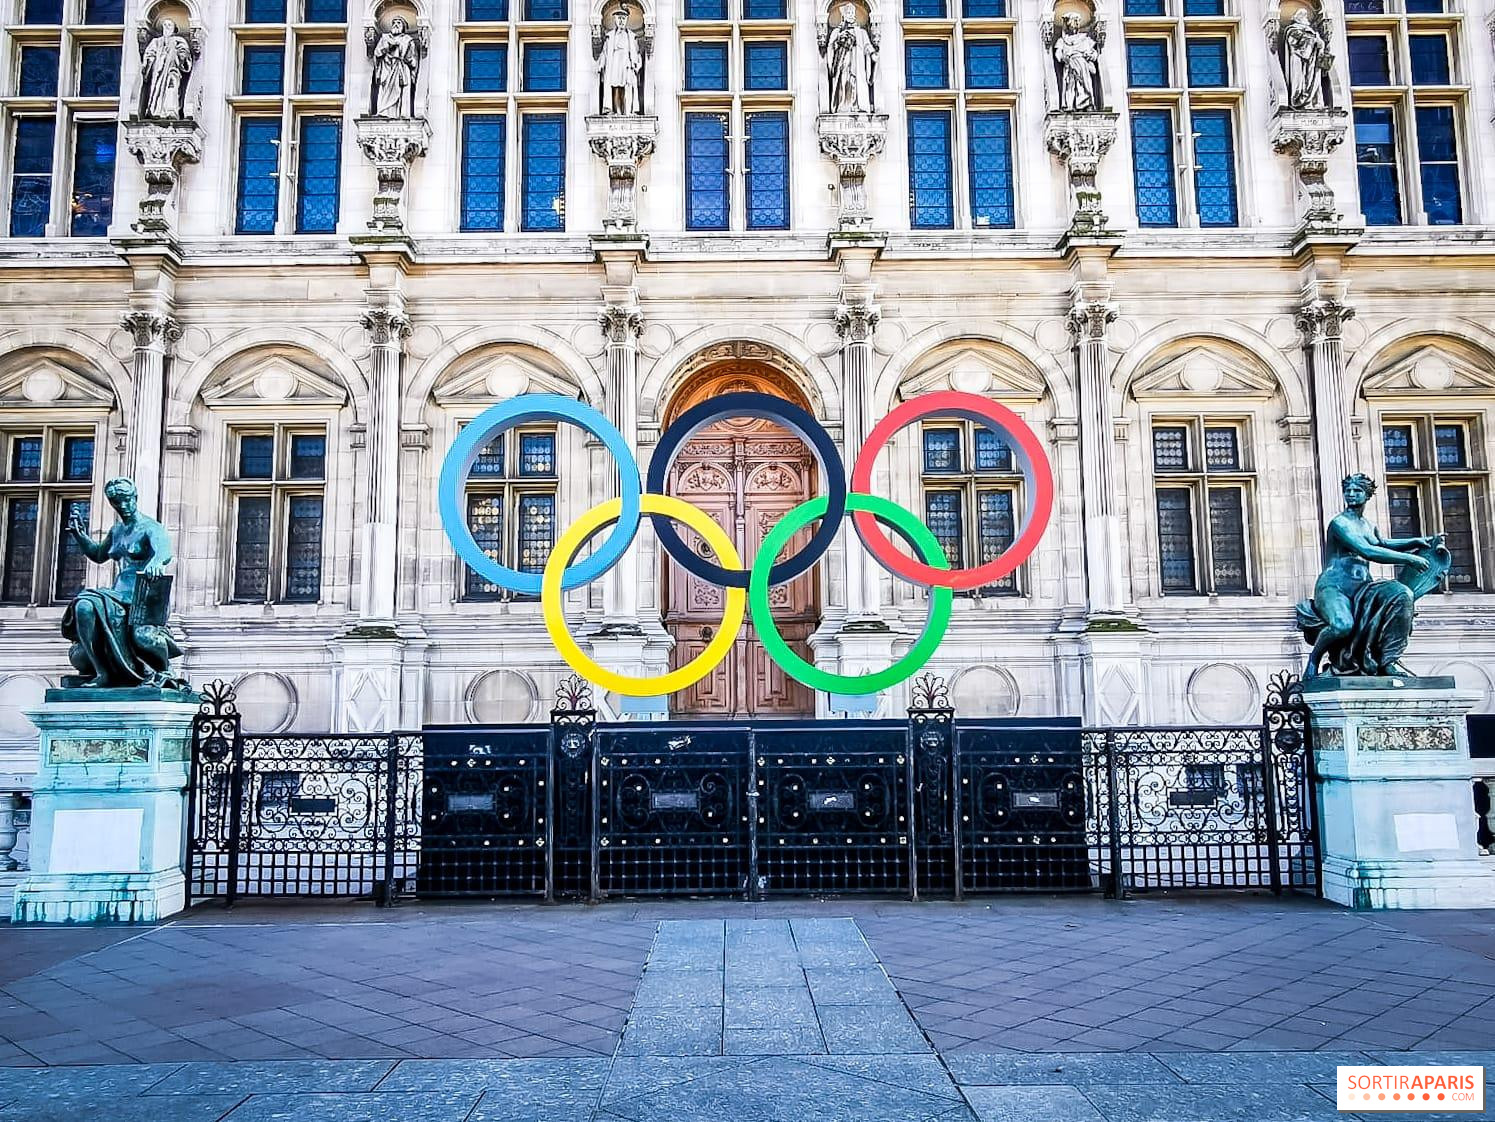 Jeux Olympiques Paris 2024 : les infos et actualités sur les JO 2024 à ne  pas manquer 